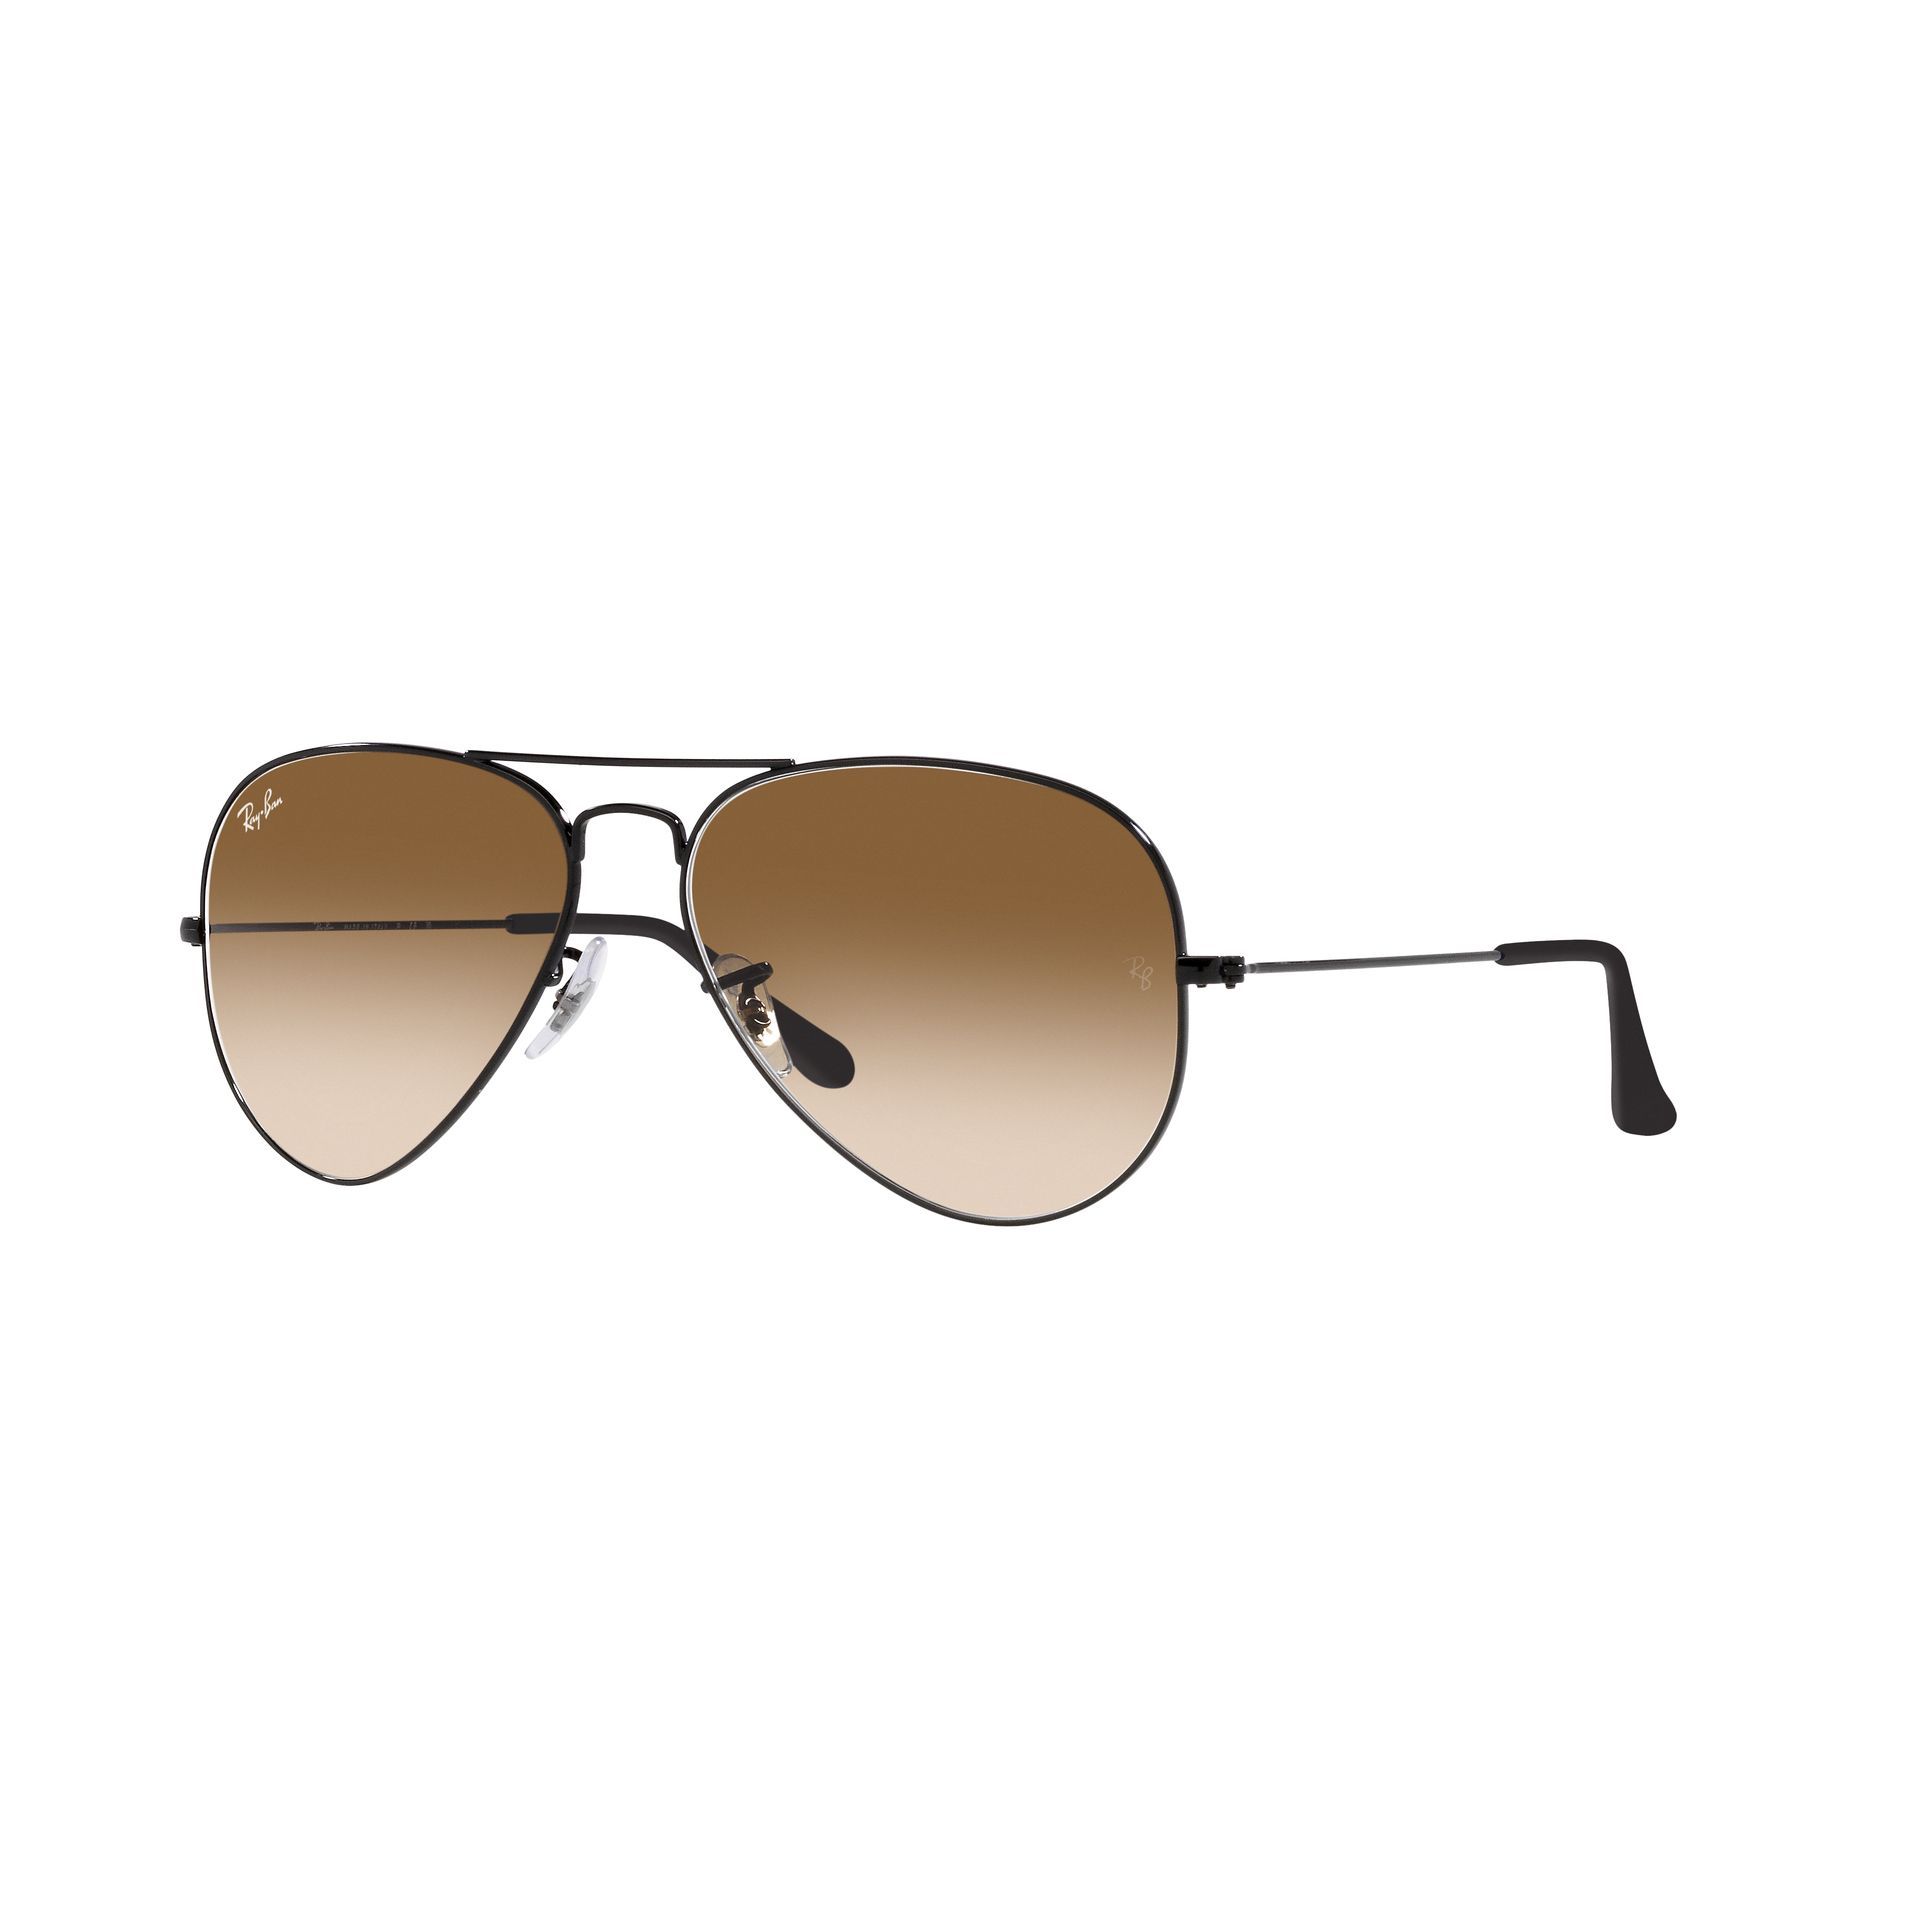 0RB3025 Aviator Sunglasses 002 51 - size 62